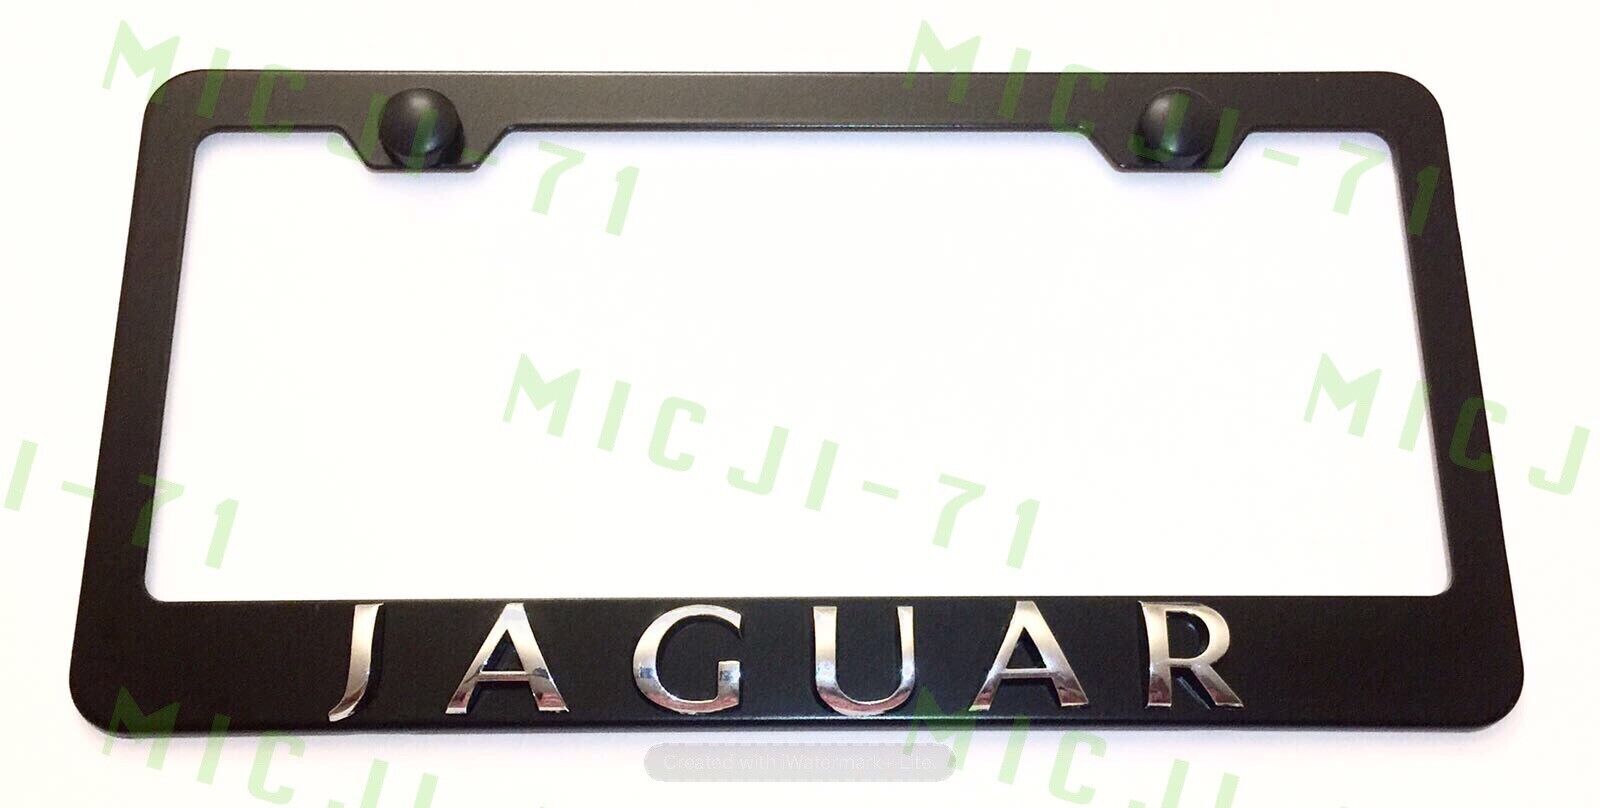 3D Jaguar Emblem Stainless Steel License Plate Frame Rust Free